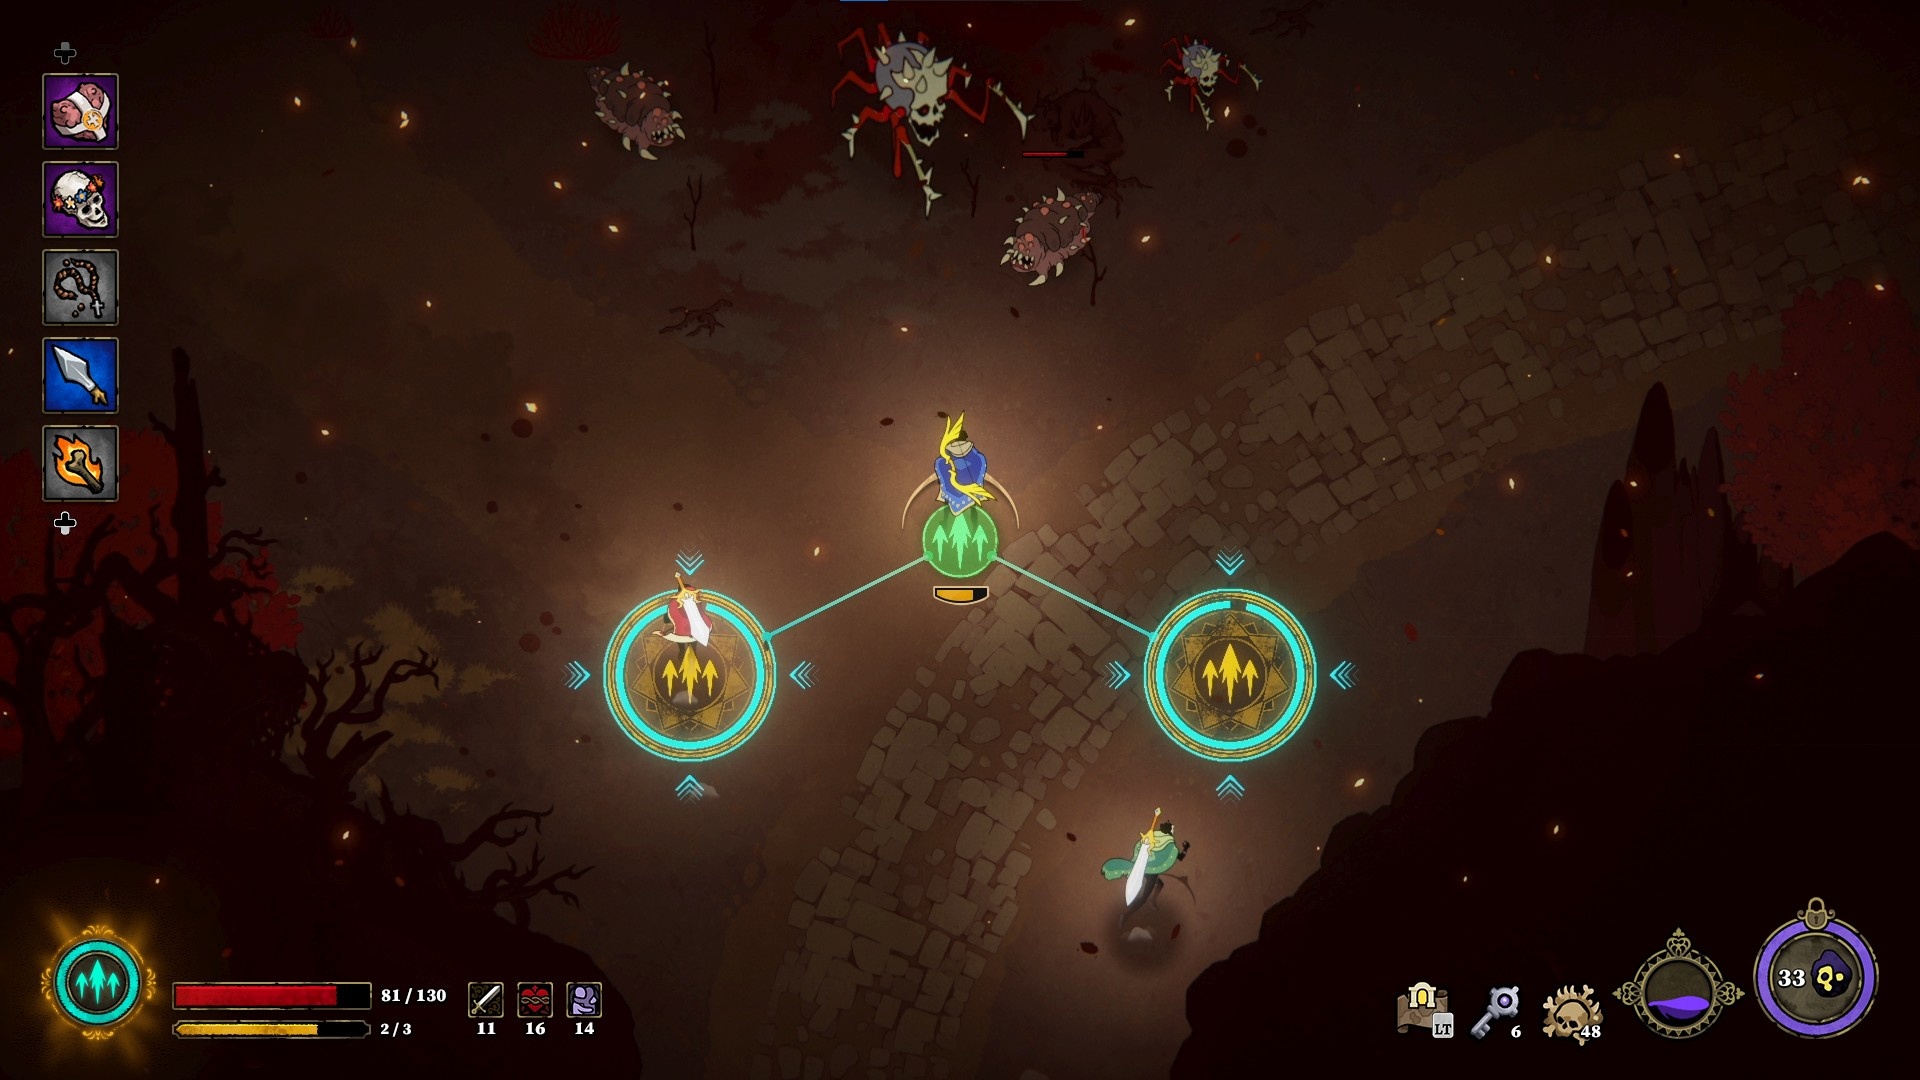 (Lorsque le troisième joueur se place dans le cercle de droite, une puissante pluie de flèches s'abat sur les ennemis en haut de l'écran)